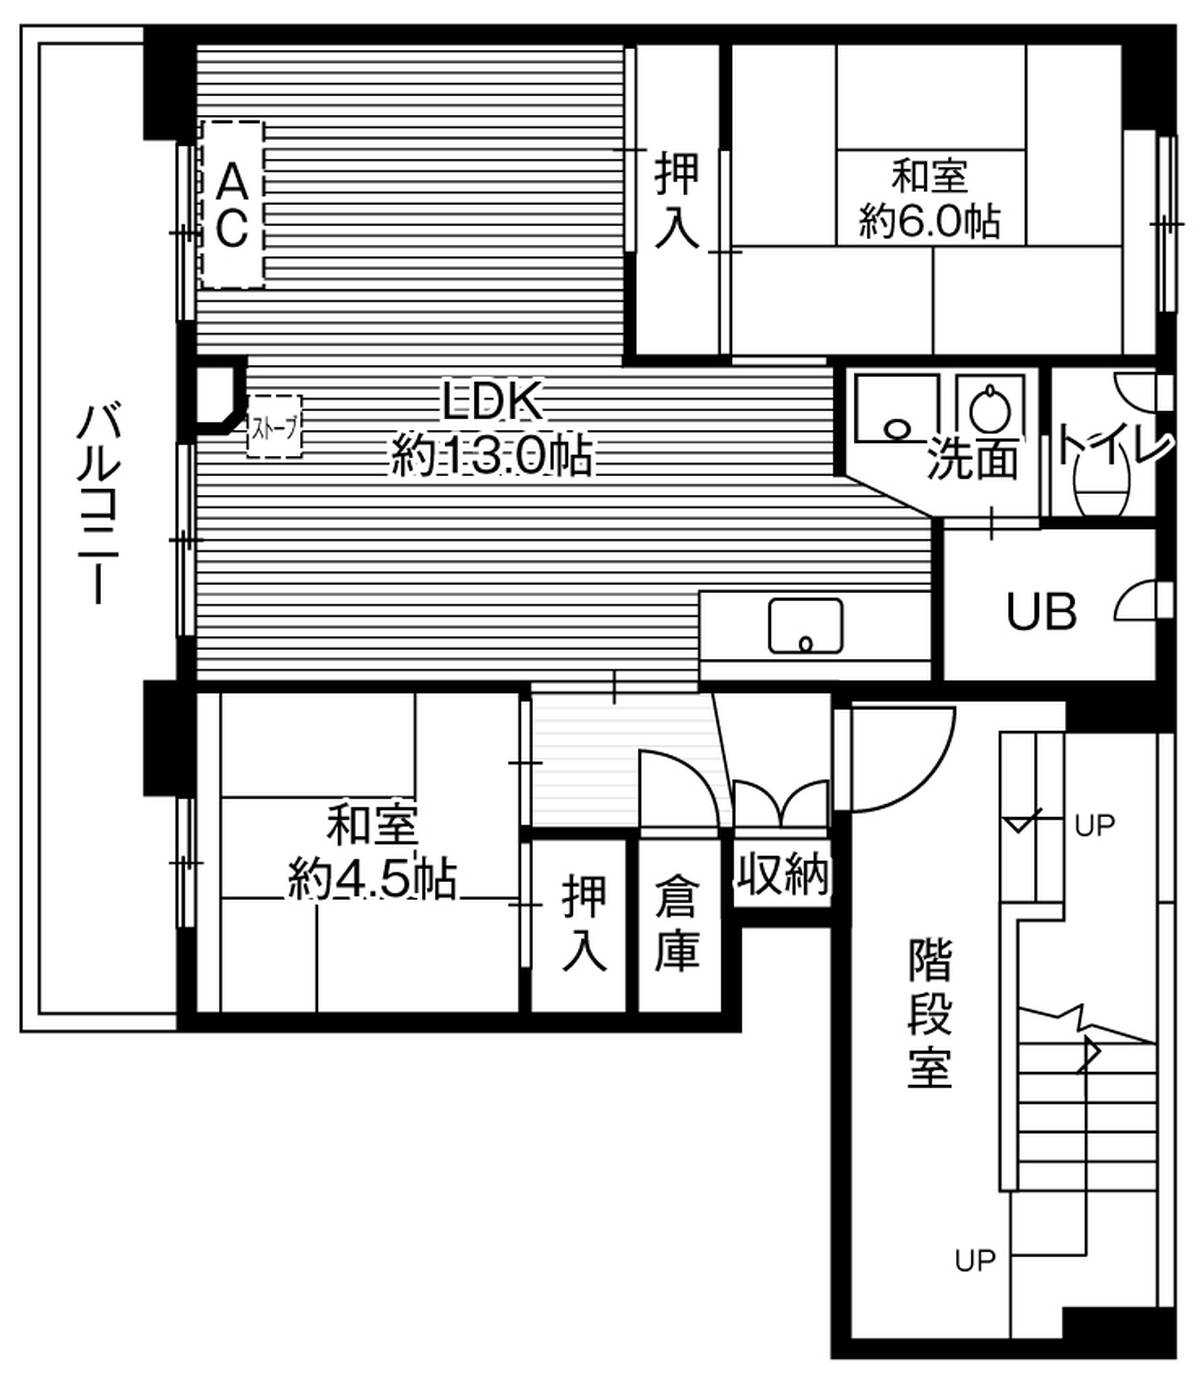 2LDK floorplan of Village House Taisei in Obihiro-shi